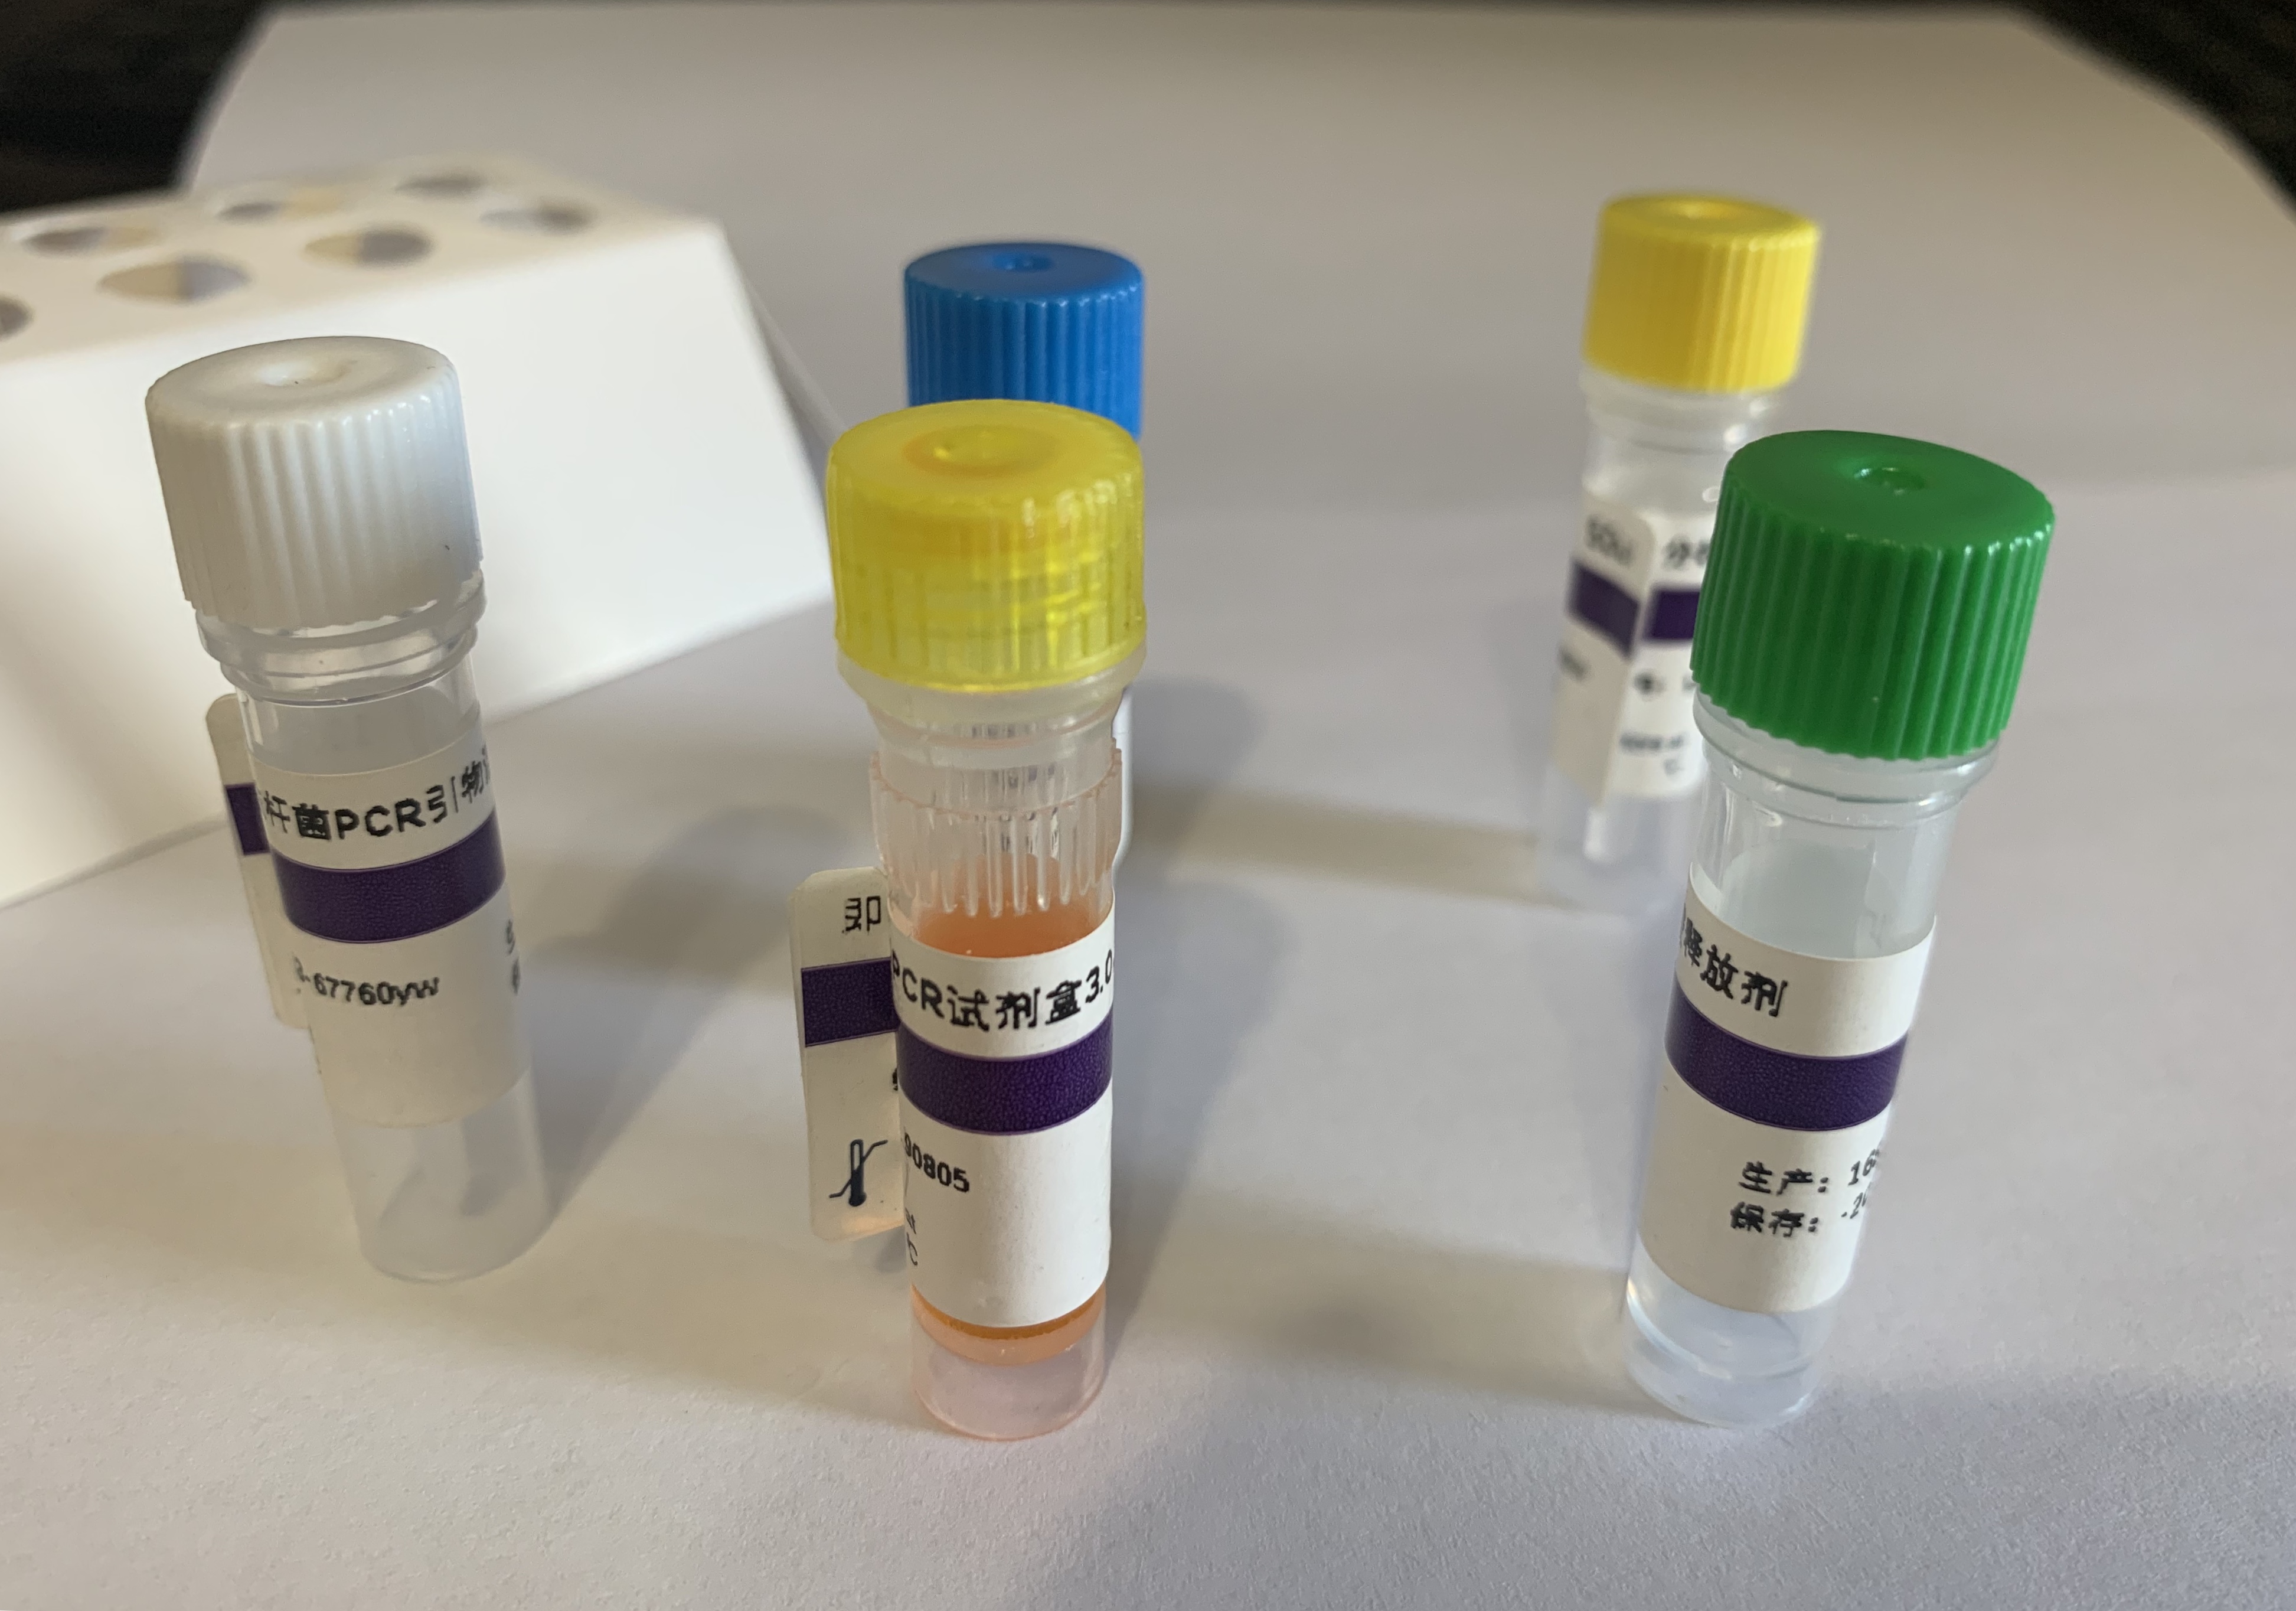 人疱疹病毒7型探针法荧光定量PCR试剂盒